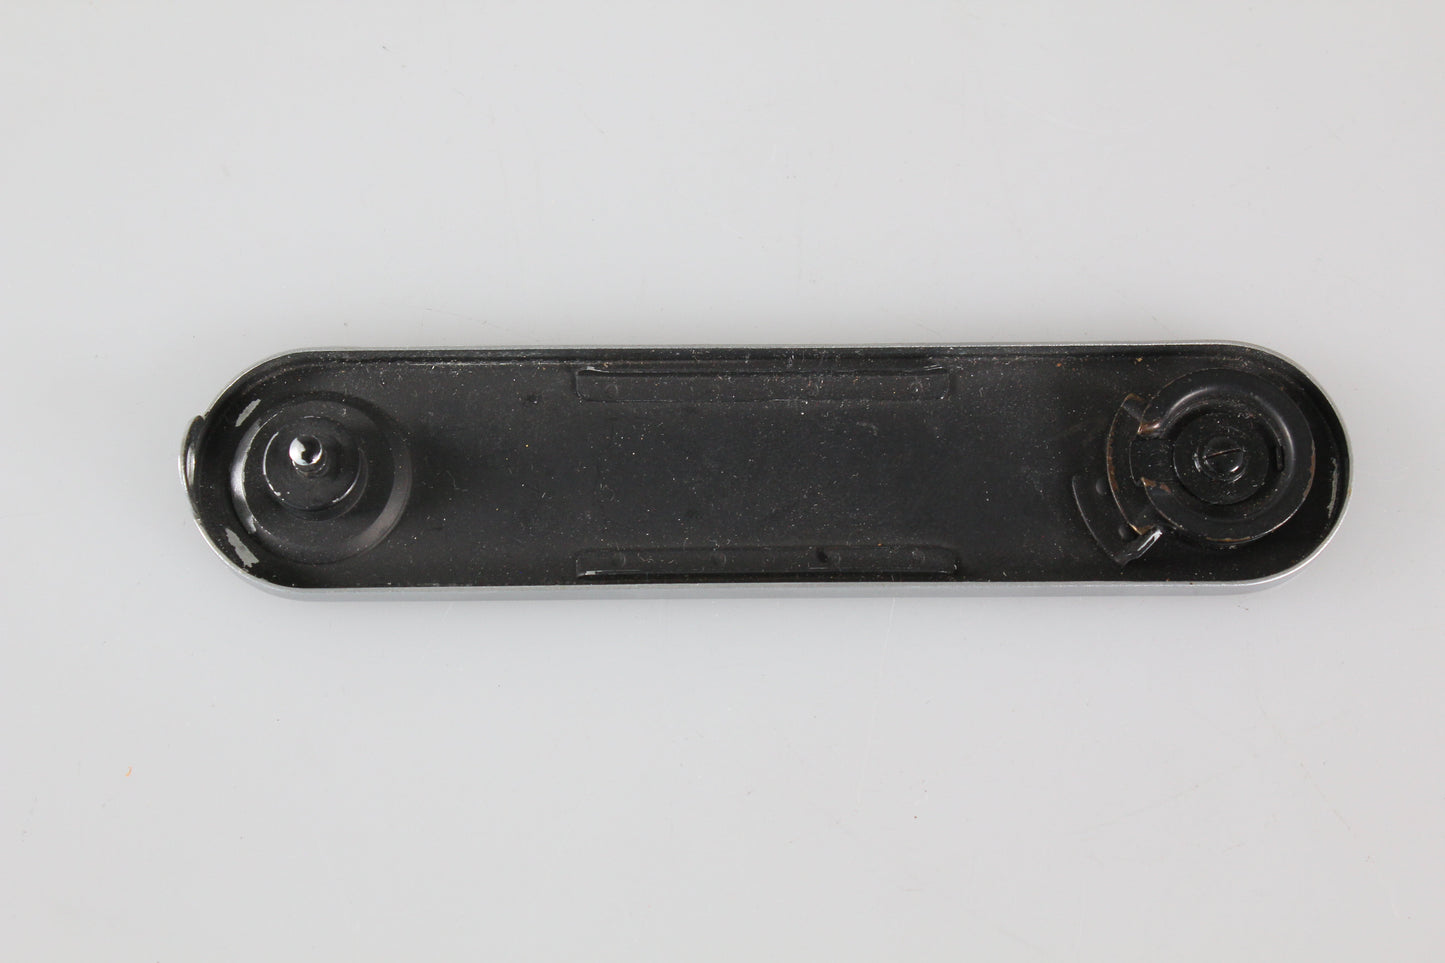 Leica original baseplate for M2, M3 camera chrome